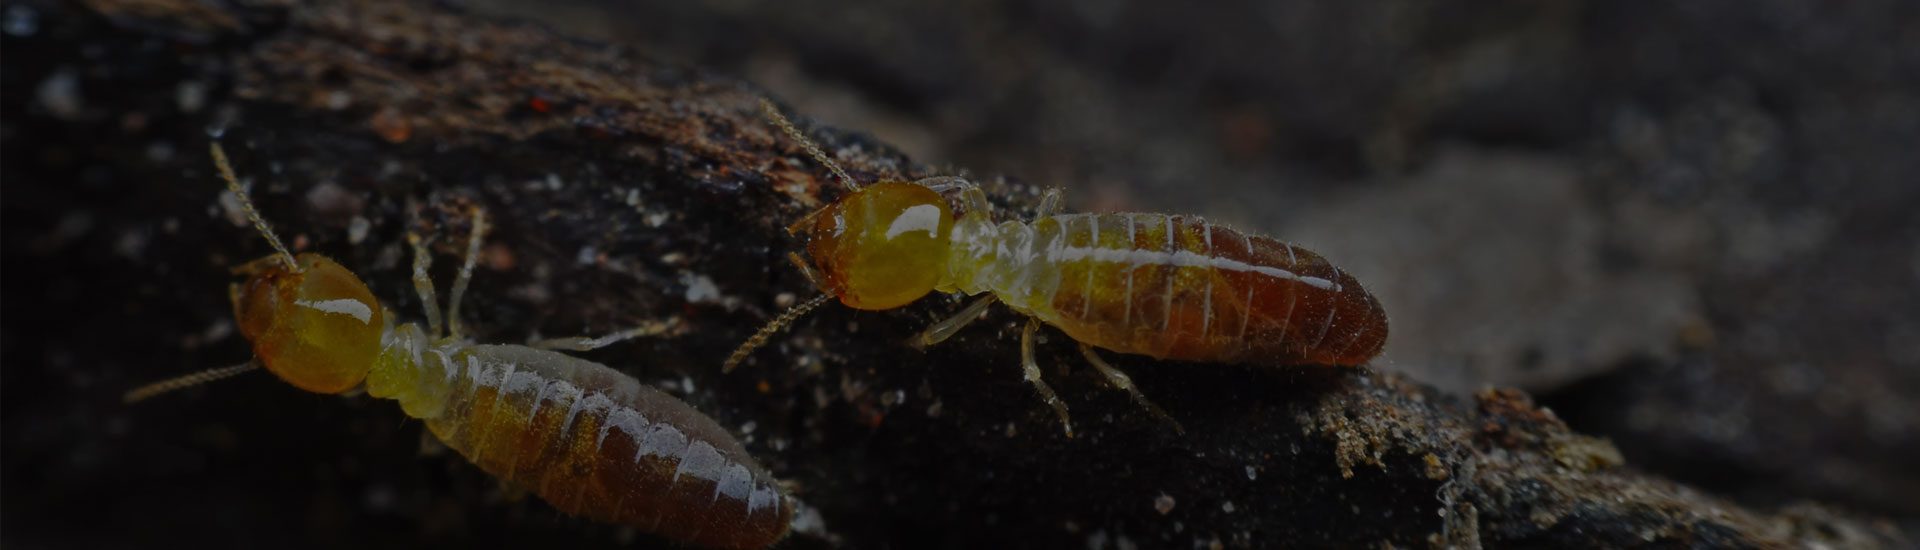 termite pest control in hyderabad